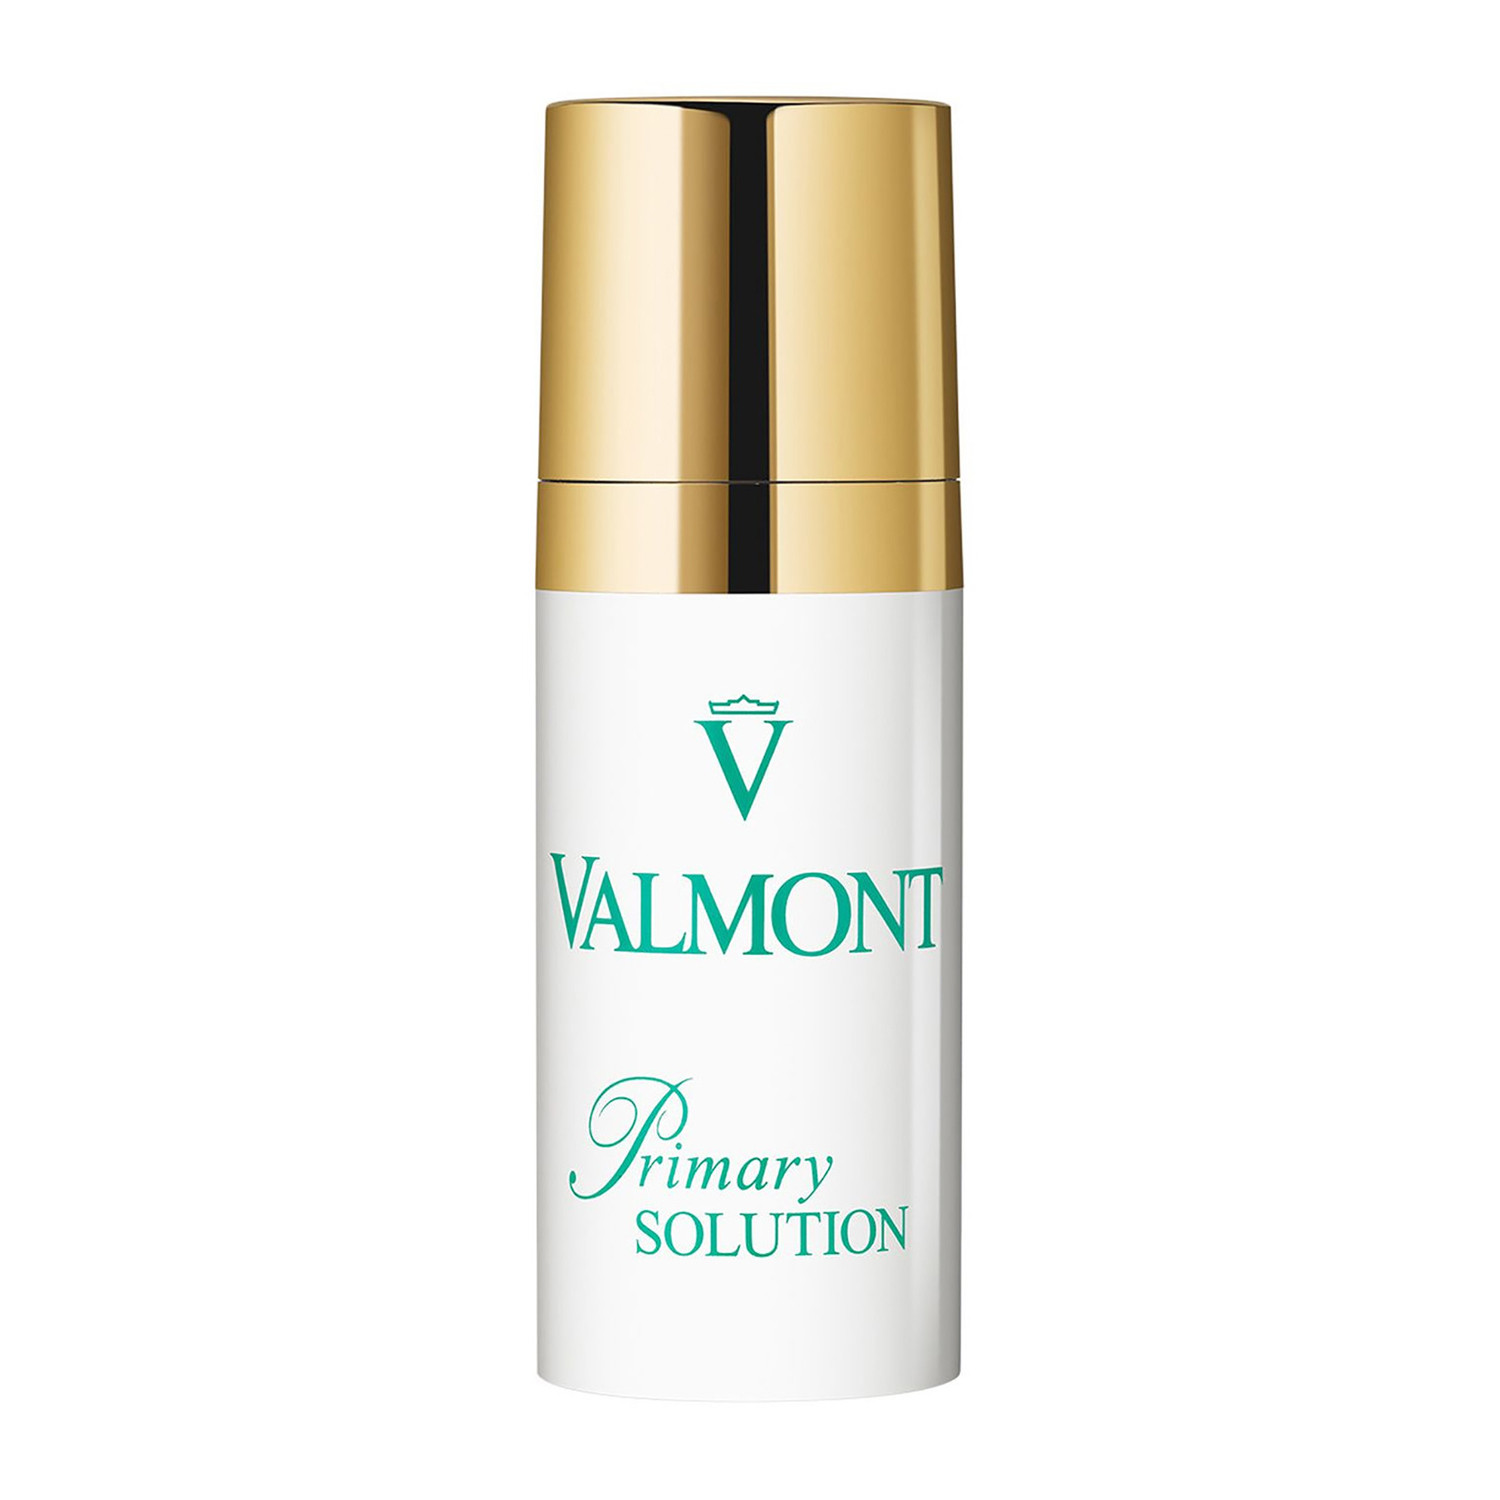 Valmont Primary Solution Протизапальний крем від недосконалостей шкіри